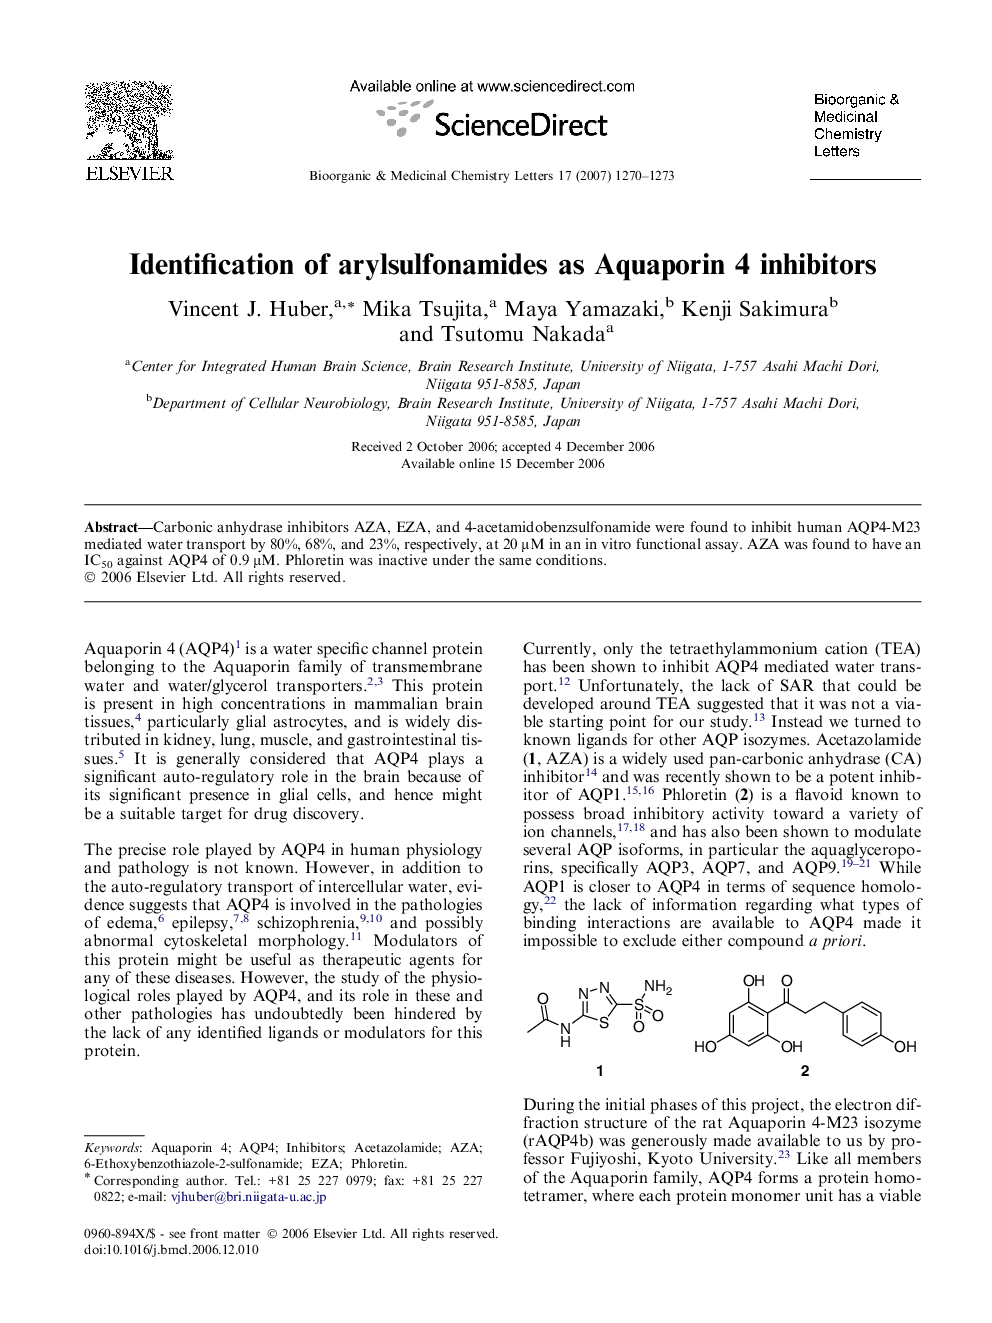 Identification of arylsulfonamides as Aquaporin 4 inhibitors